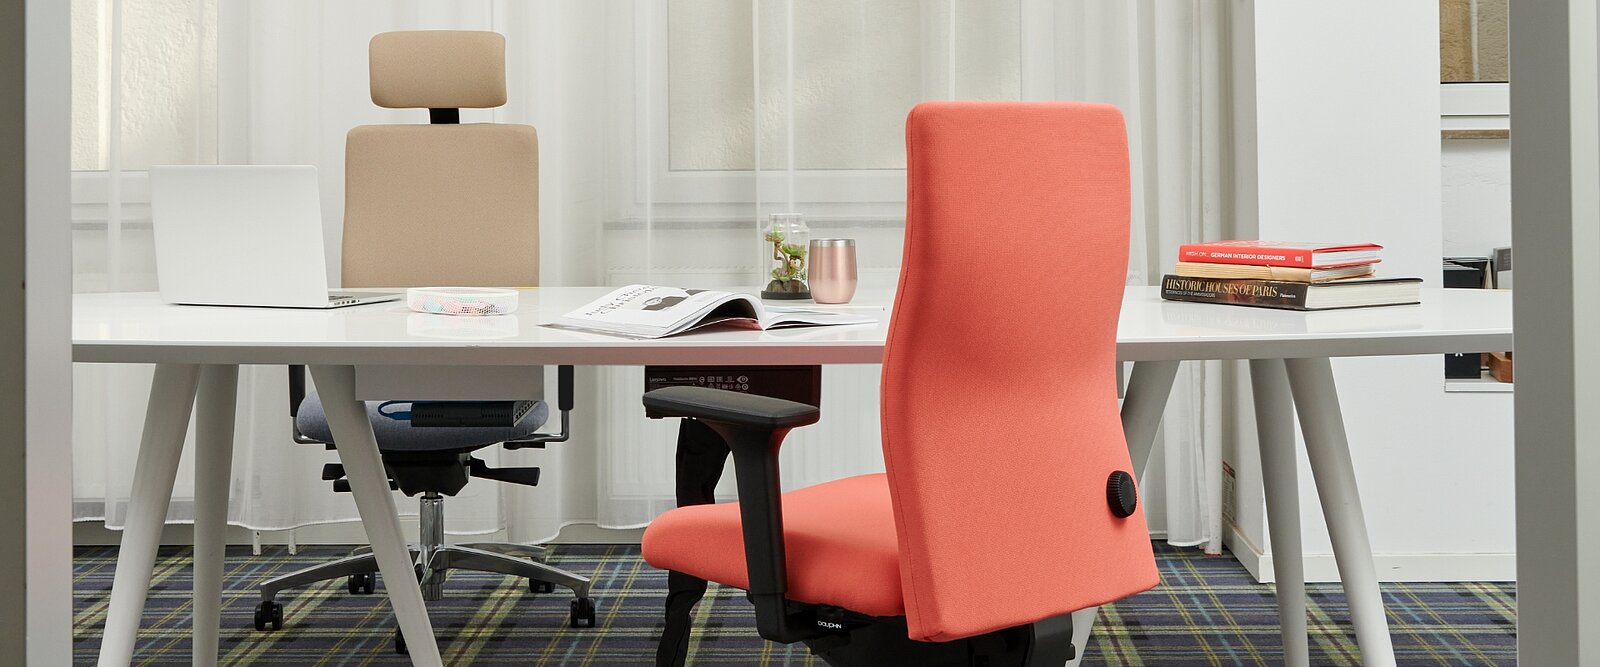 Las sillas giratorias Shape economy2 comfort con respaldo totalmente tapizado presentan un contorno anatómico del respaldo para un apoyo óptimo al trabajar.